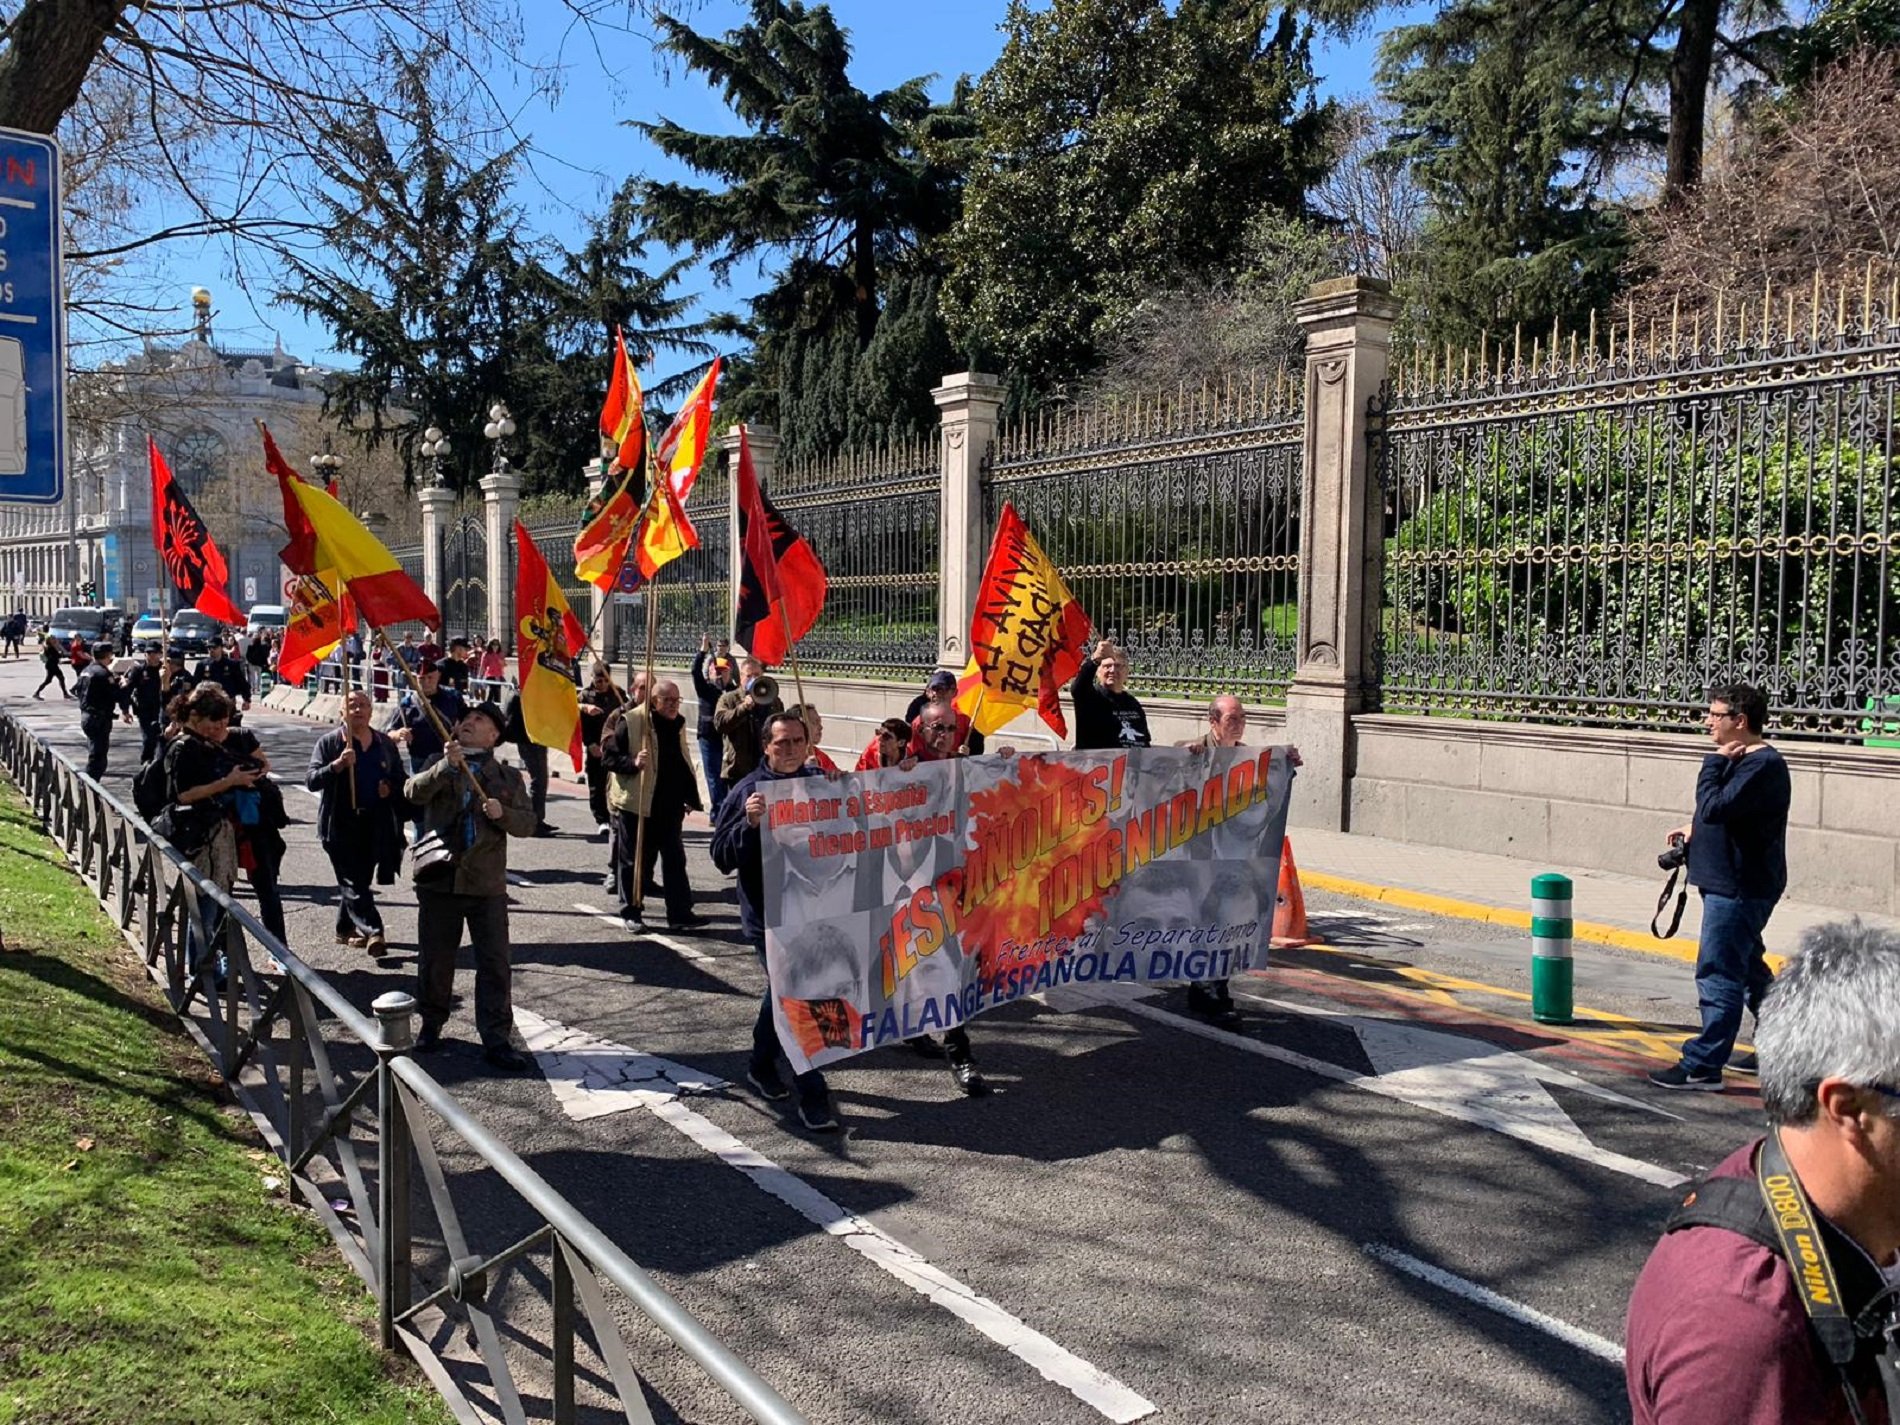 Veinte falangistas recibe a los manifestantes en Madrid